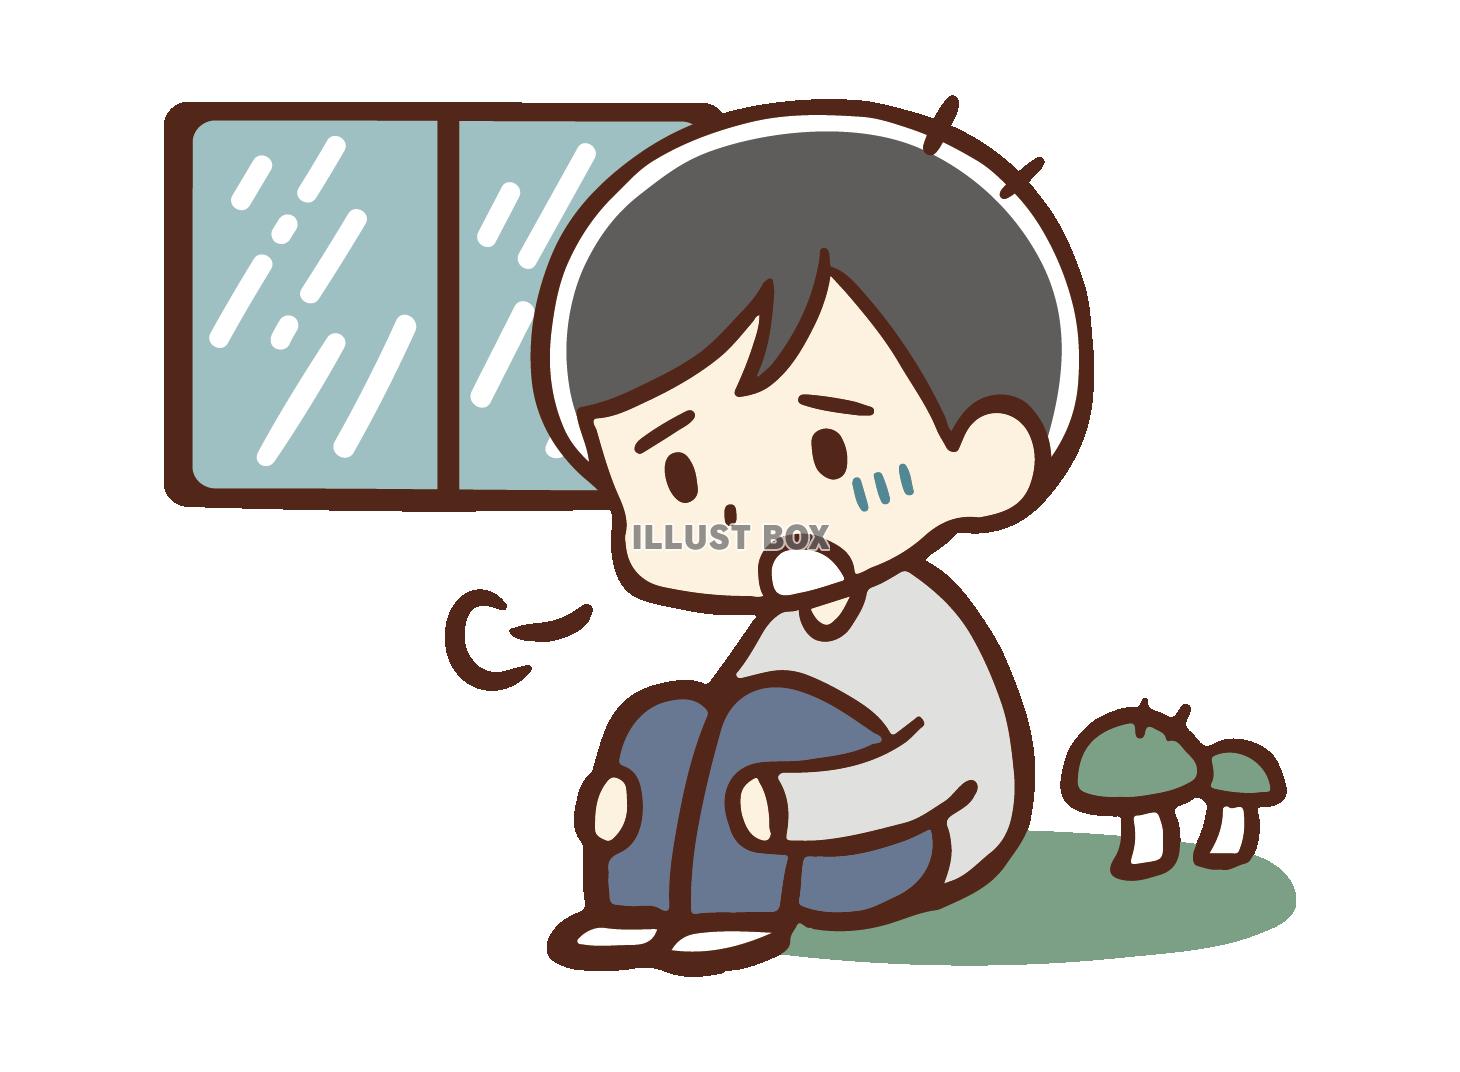 雨がひどく憂鬱な男性